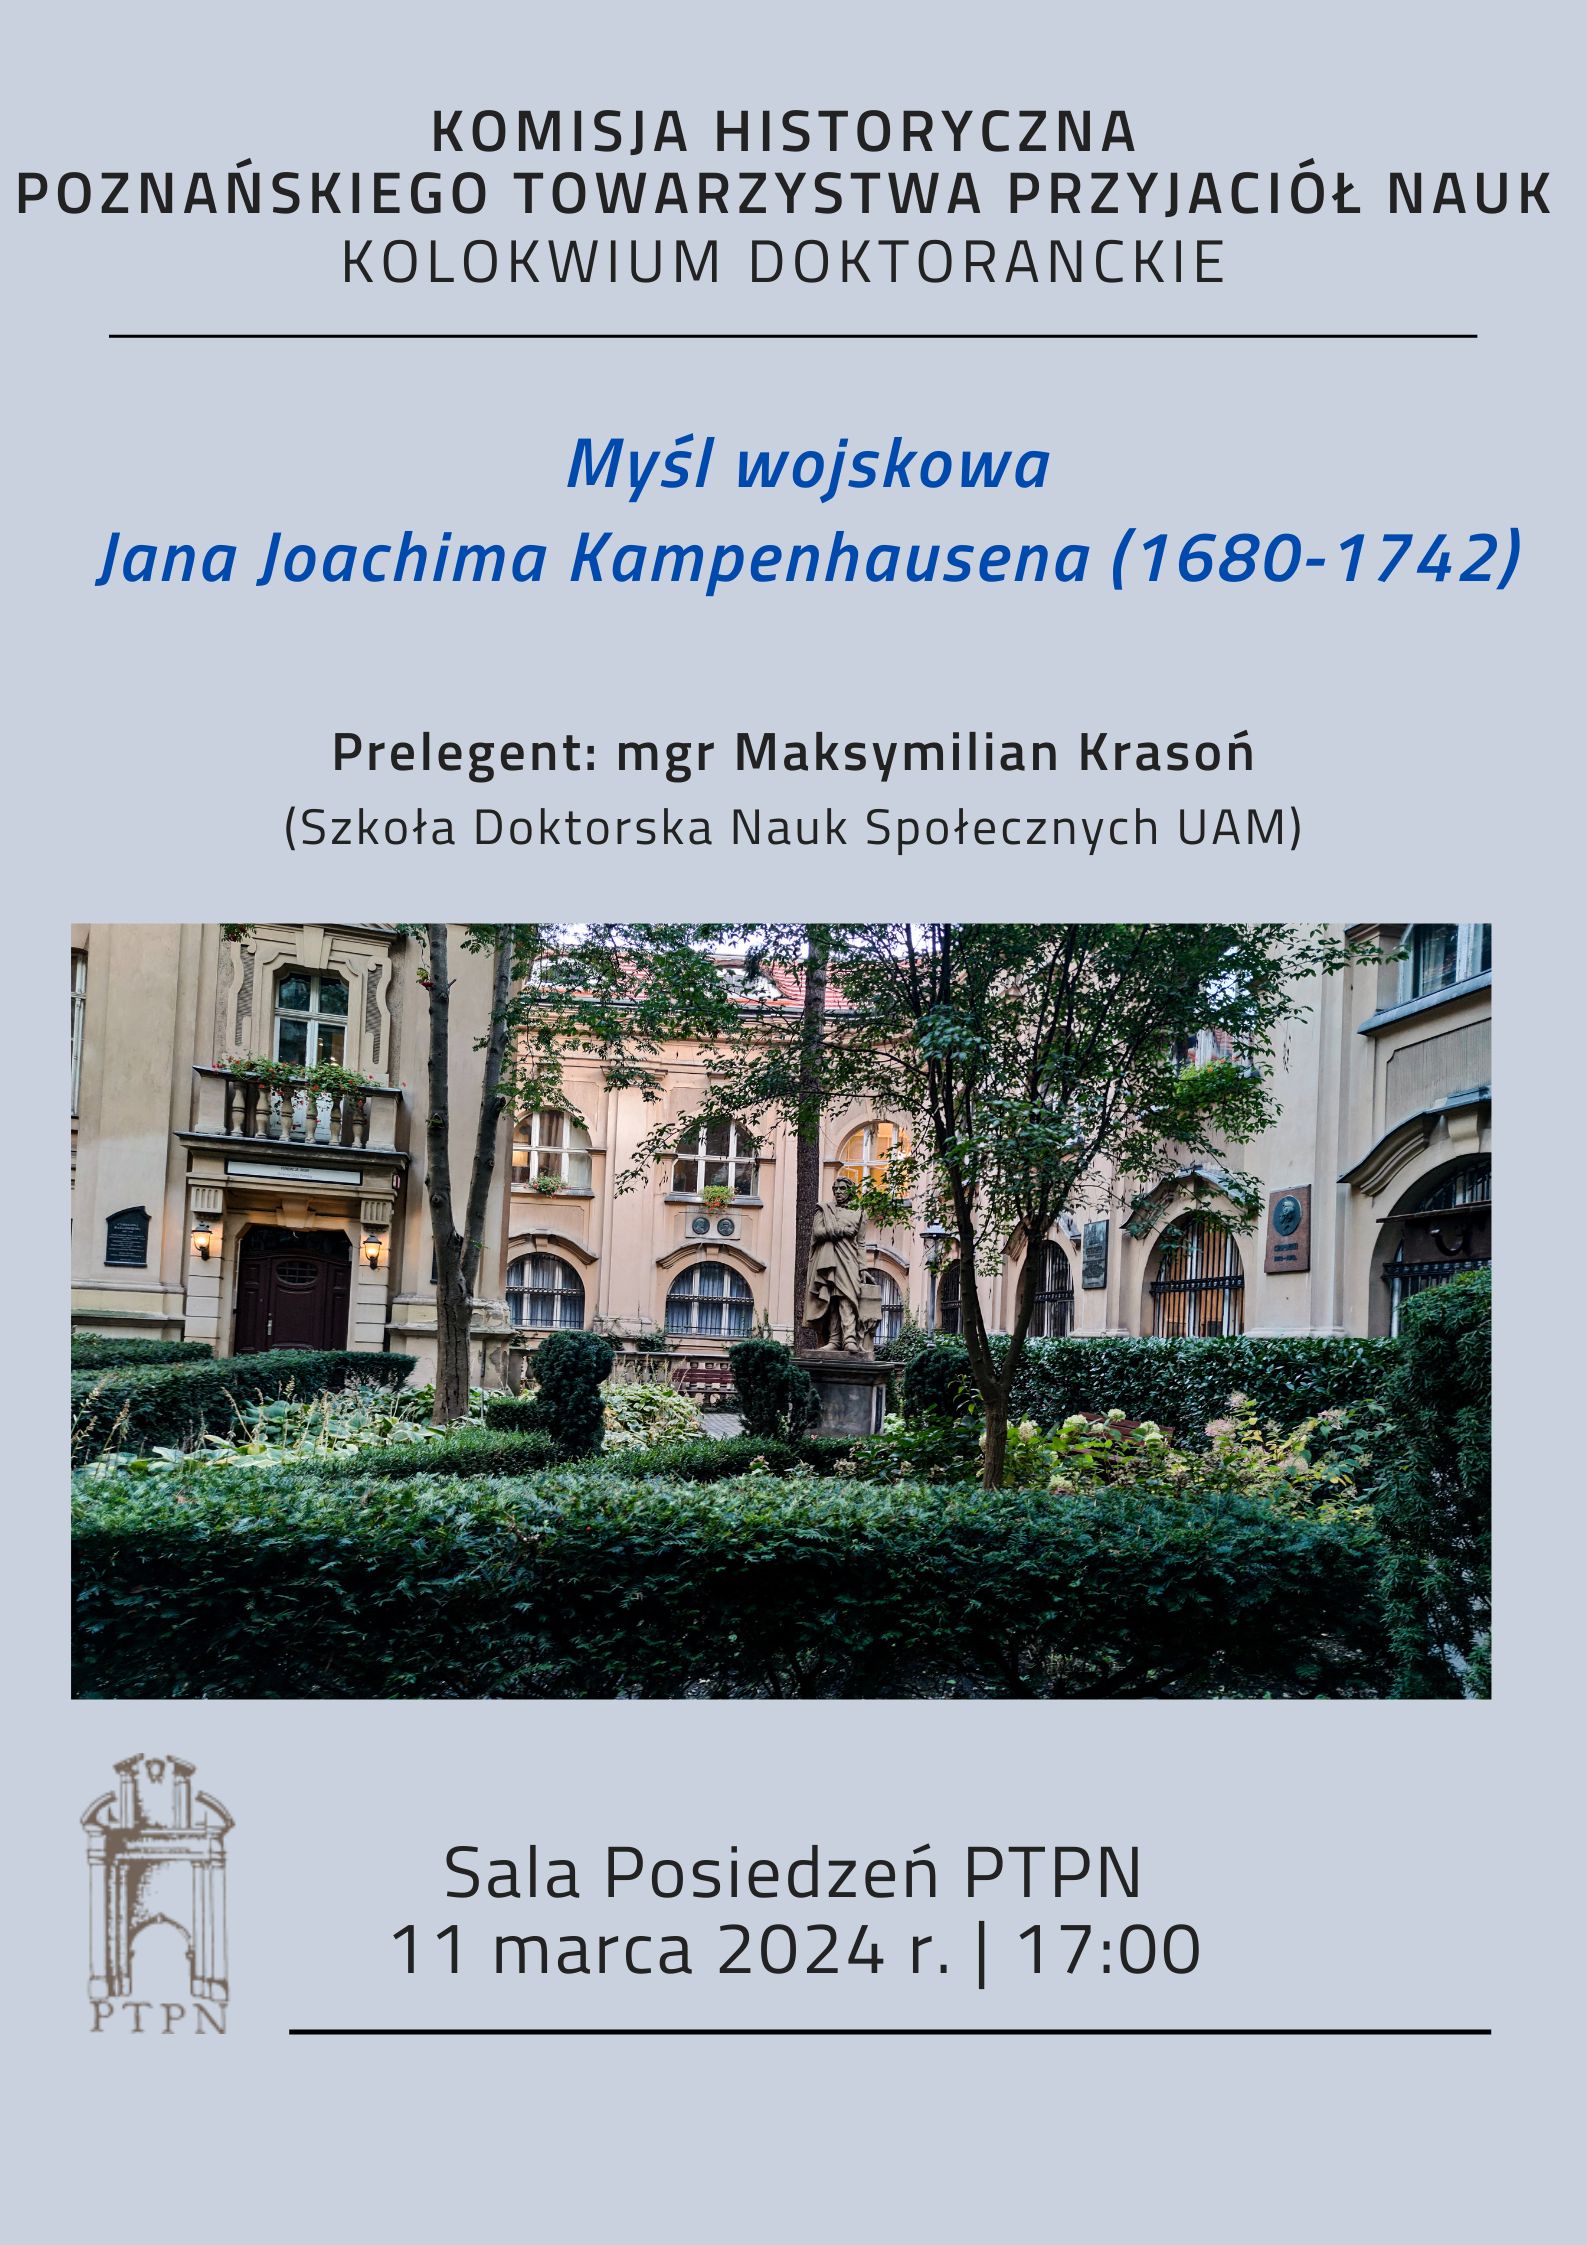 Posiedzenie Kolokwium Doktoranckiego “Myśl wojskowa Jana Joachima Kampenhausena (1680-1742)” mgr Maksymilian Krasoń, 11 marca 2024 r.  godz. 17.00